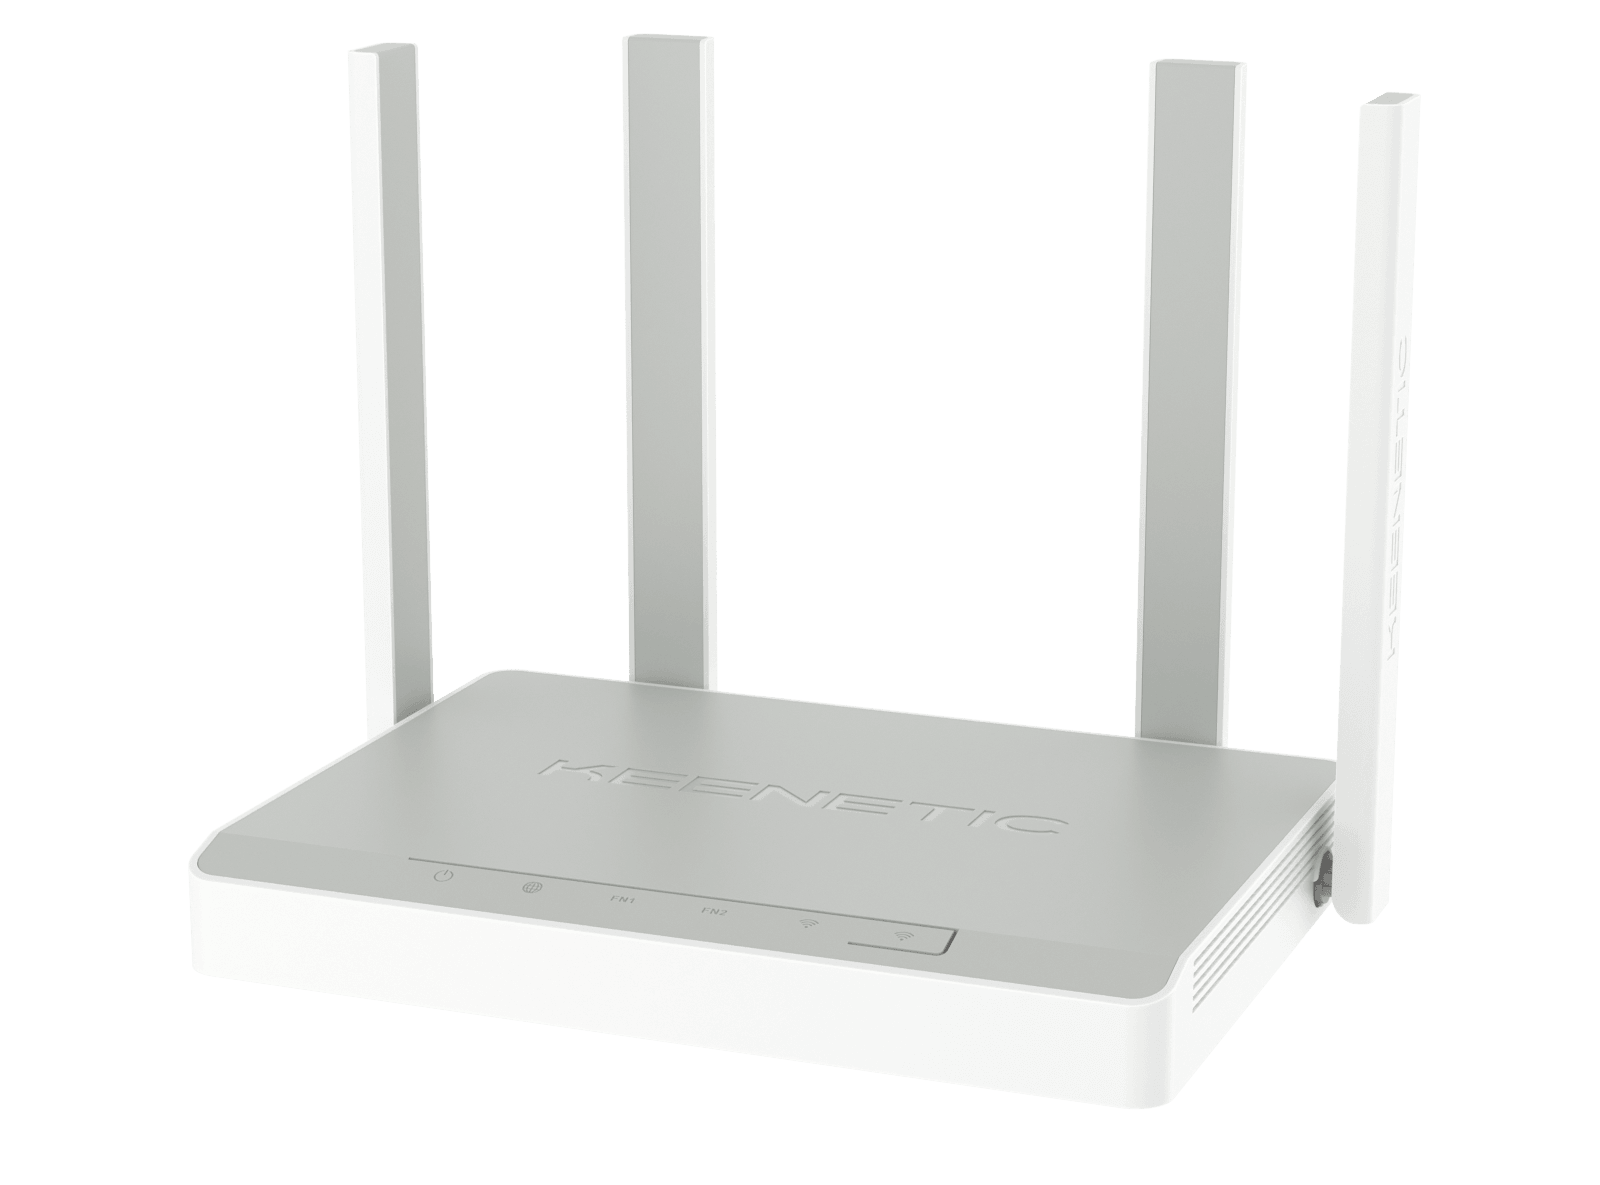 Беспроводной маршрутизатор KEENETIC "Sprinter" KN-3710 WiFi 1201+574Мбит/сек. + 4 порта LAN 1Гбит/сек. + 1 порт WAN 1Гбит/сек.